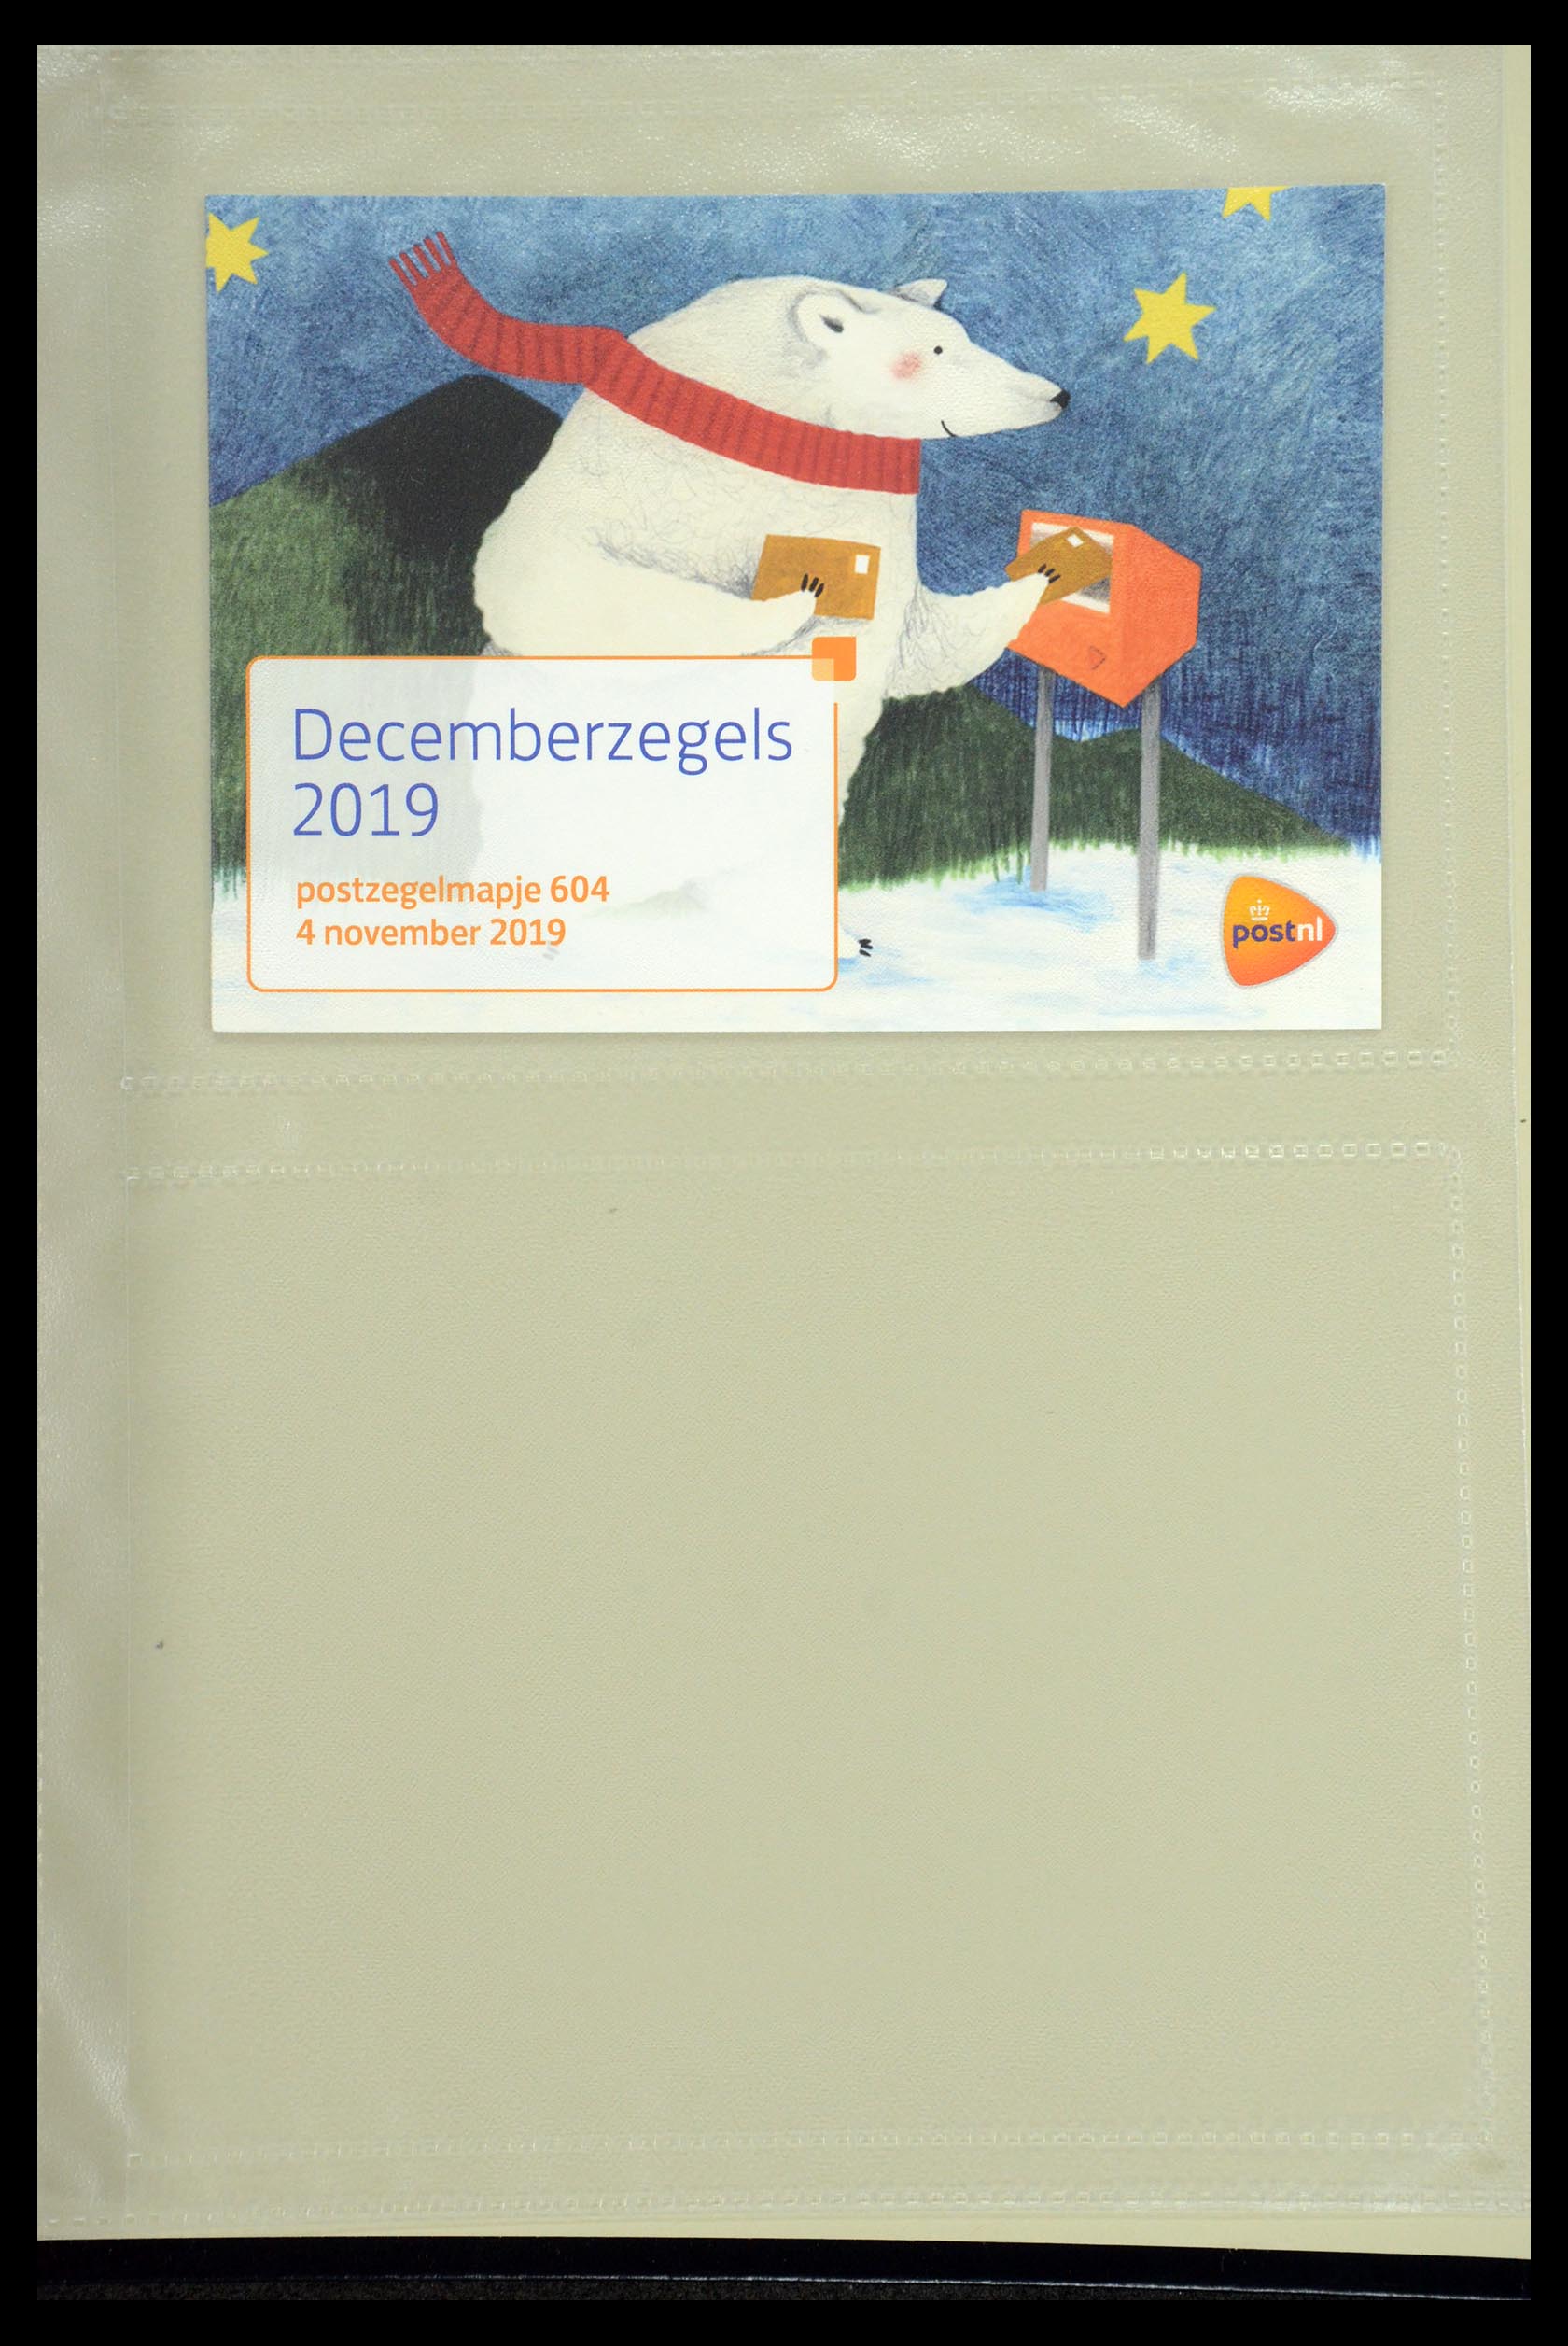 35947 365 - Stamp Collection 35947 Netherlands PTT presentation packs 1982-2019!